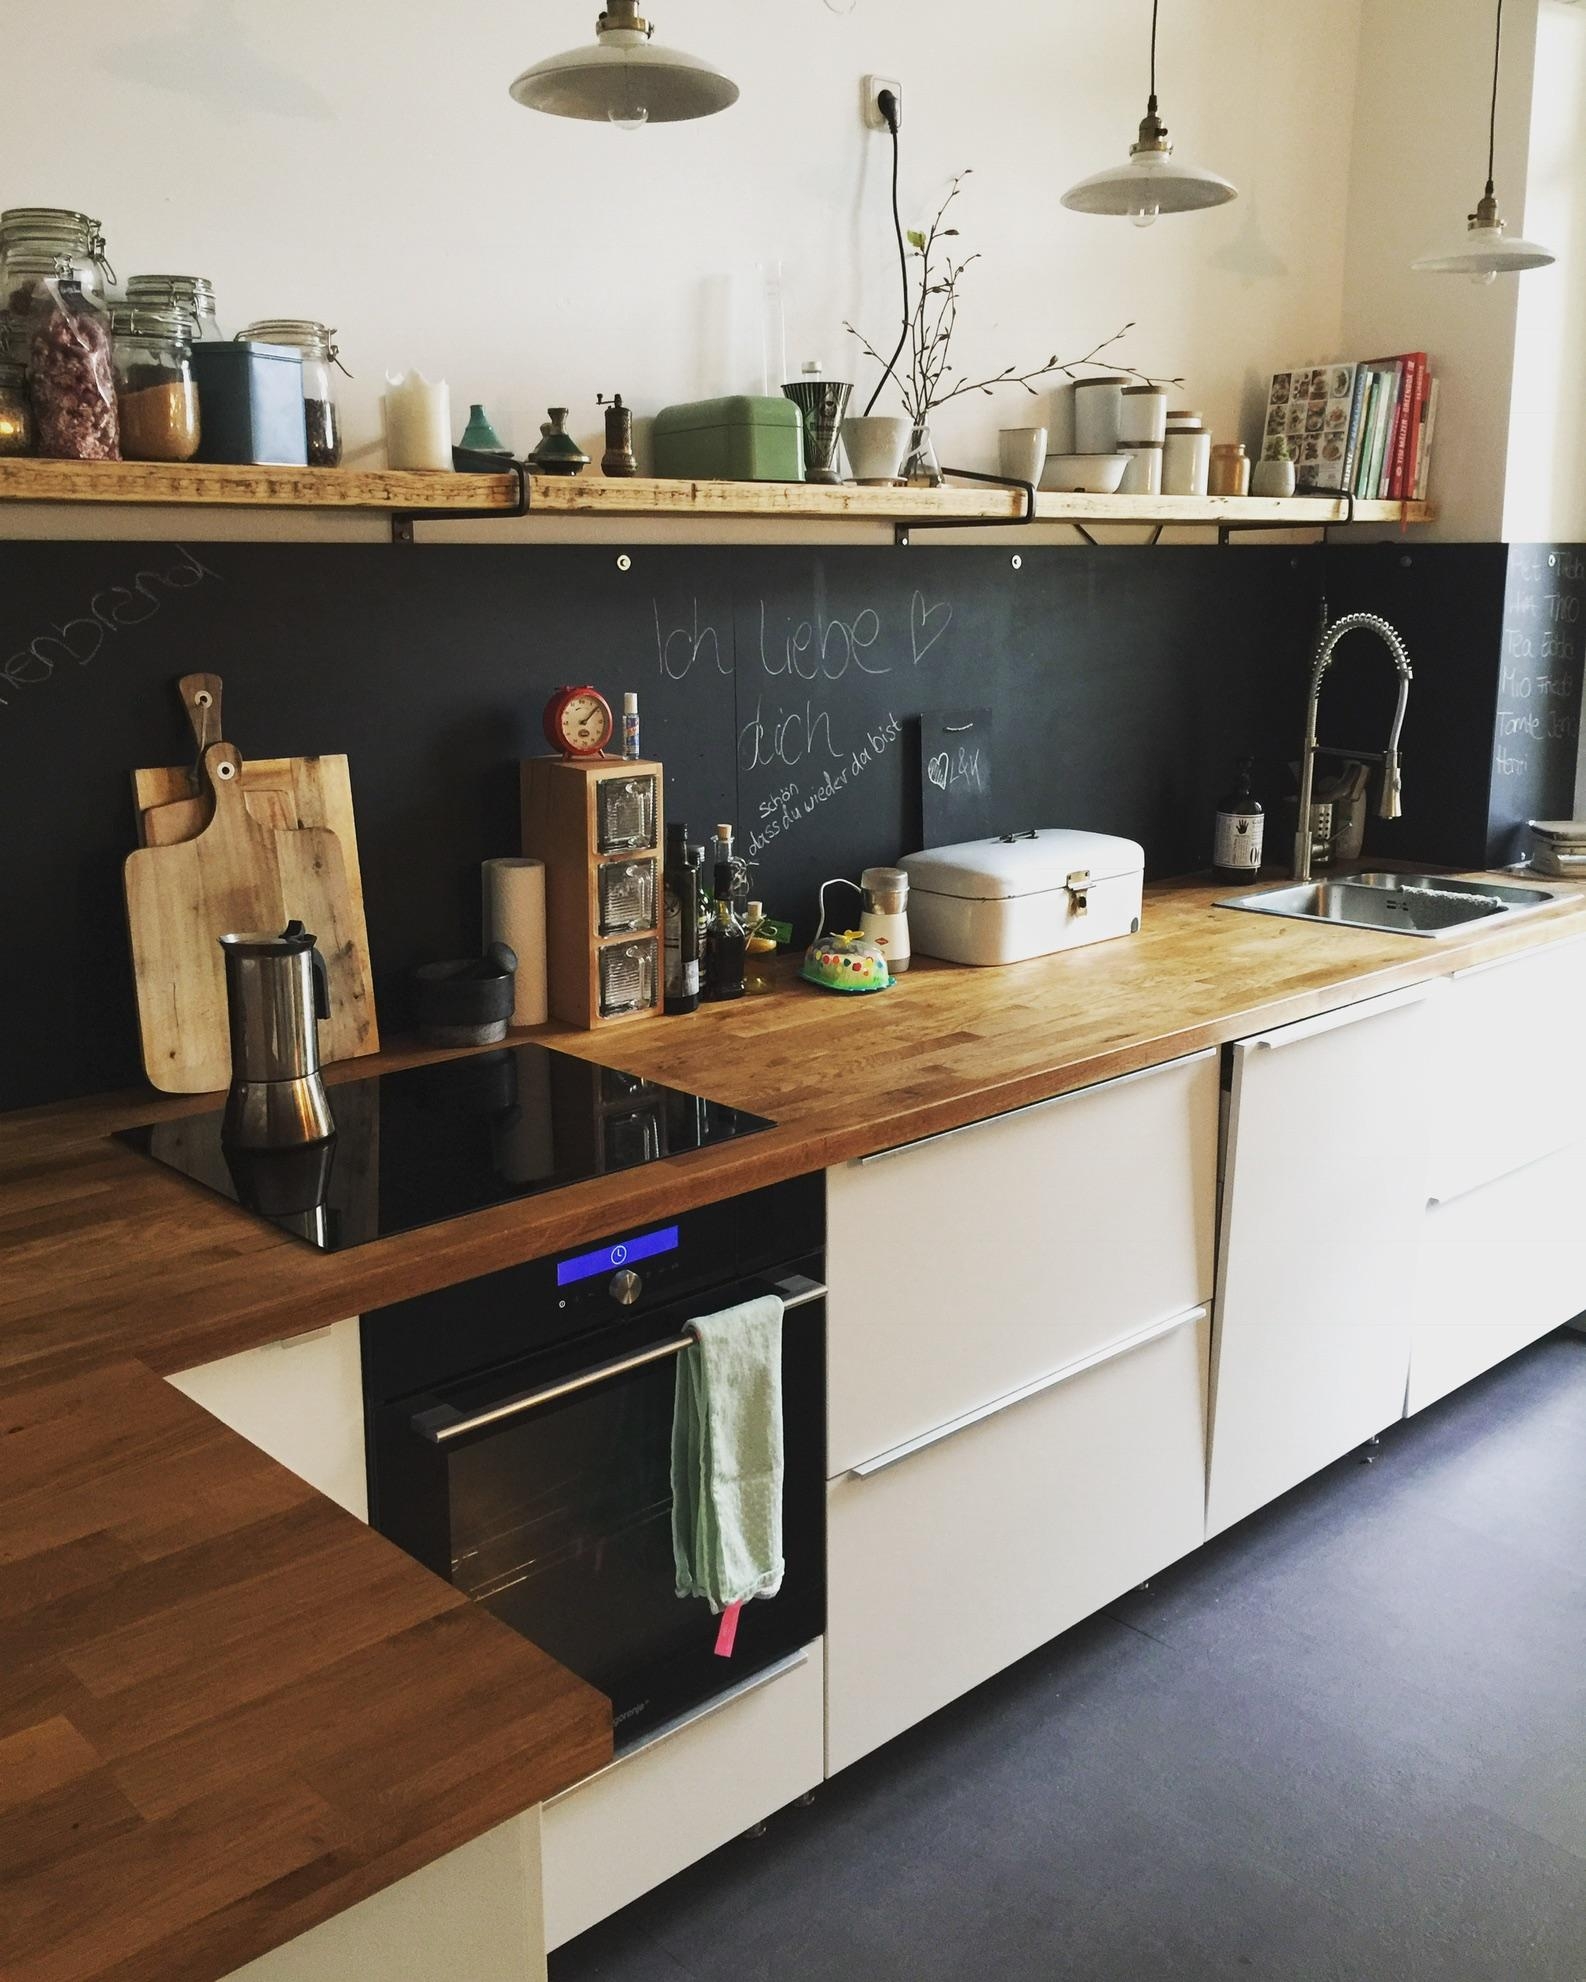 Küchen liebe 🖤 Selfmade project ! 
#interior #küchenliebe #couchstyle